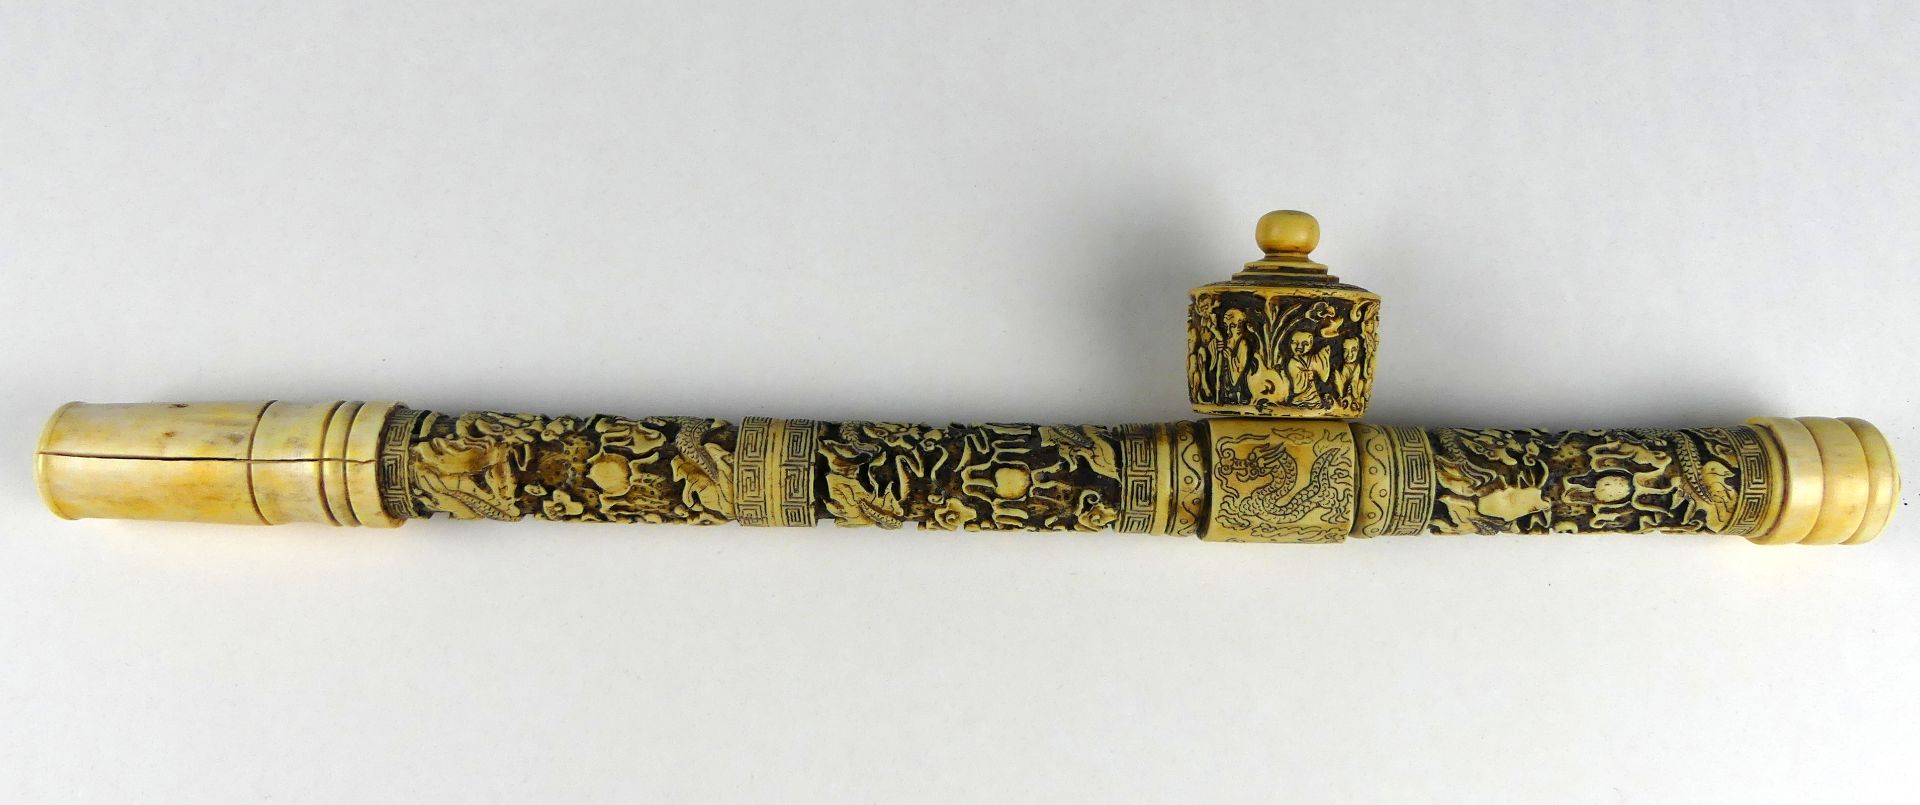 Opium-Pfeife, Asien, reich geschnitzt, kleiner Riss am Mundstück, - Bild 2 aus 2